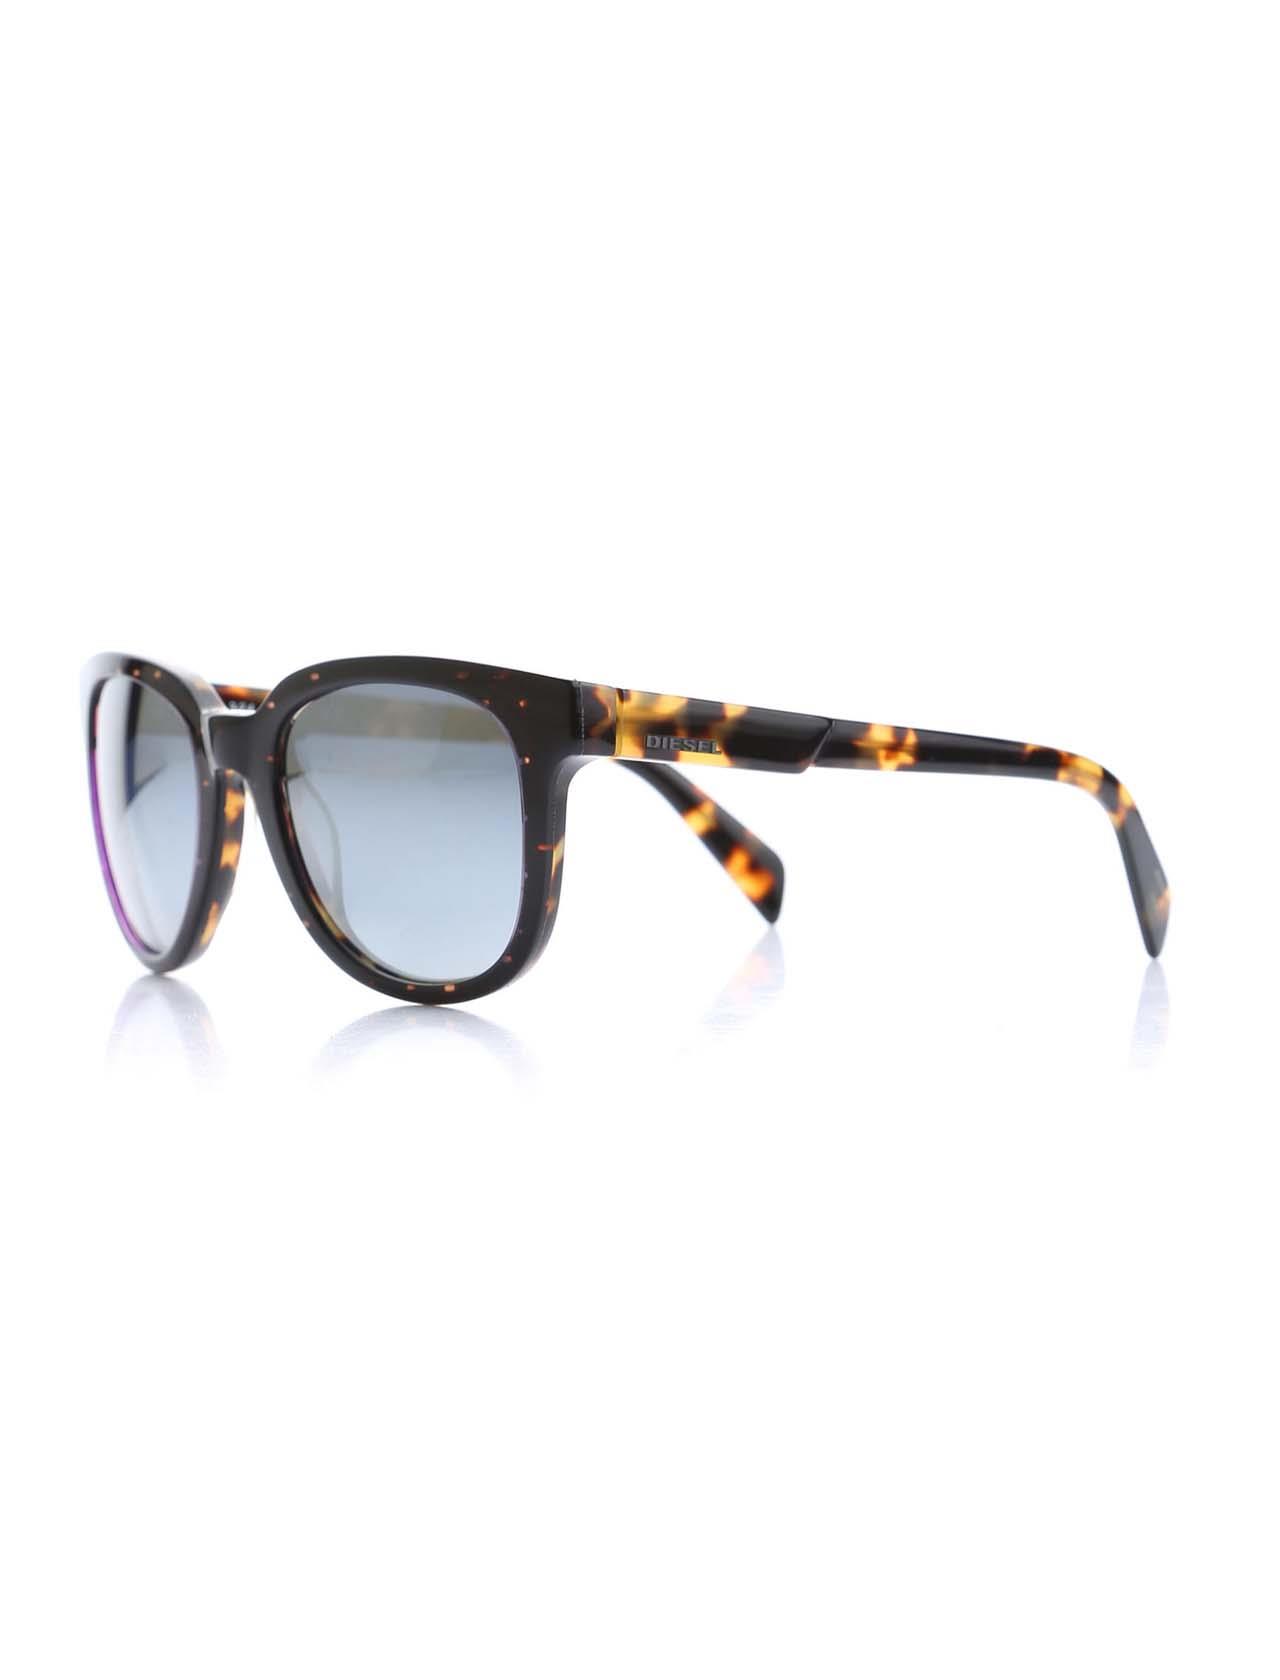 Unisex Plastic Frame Sunglasses